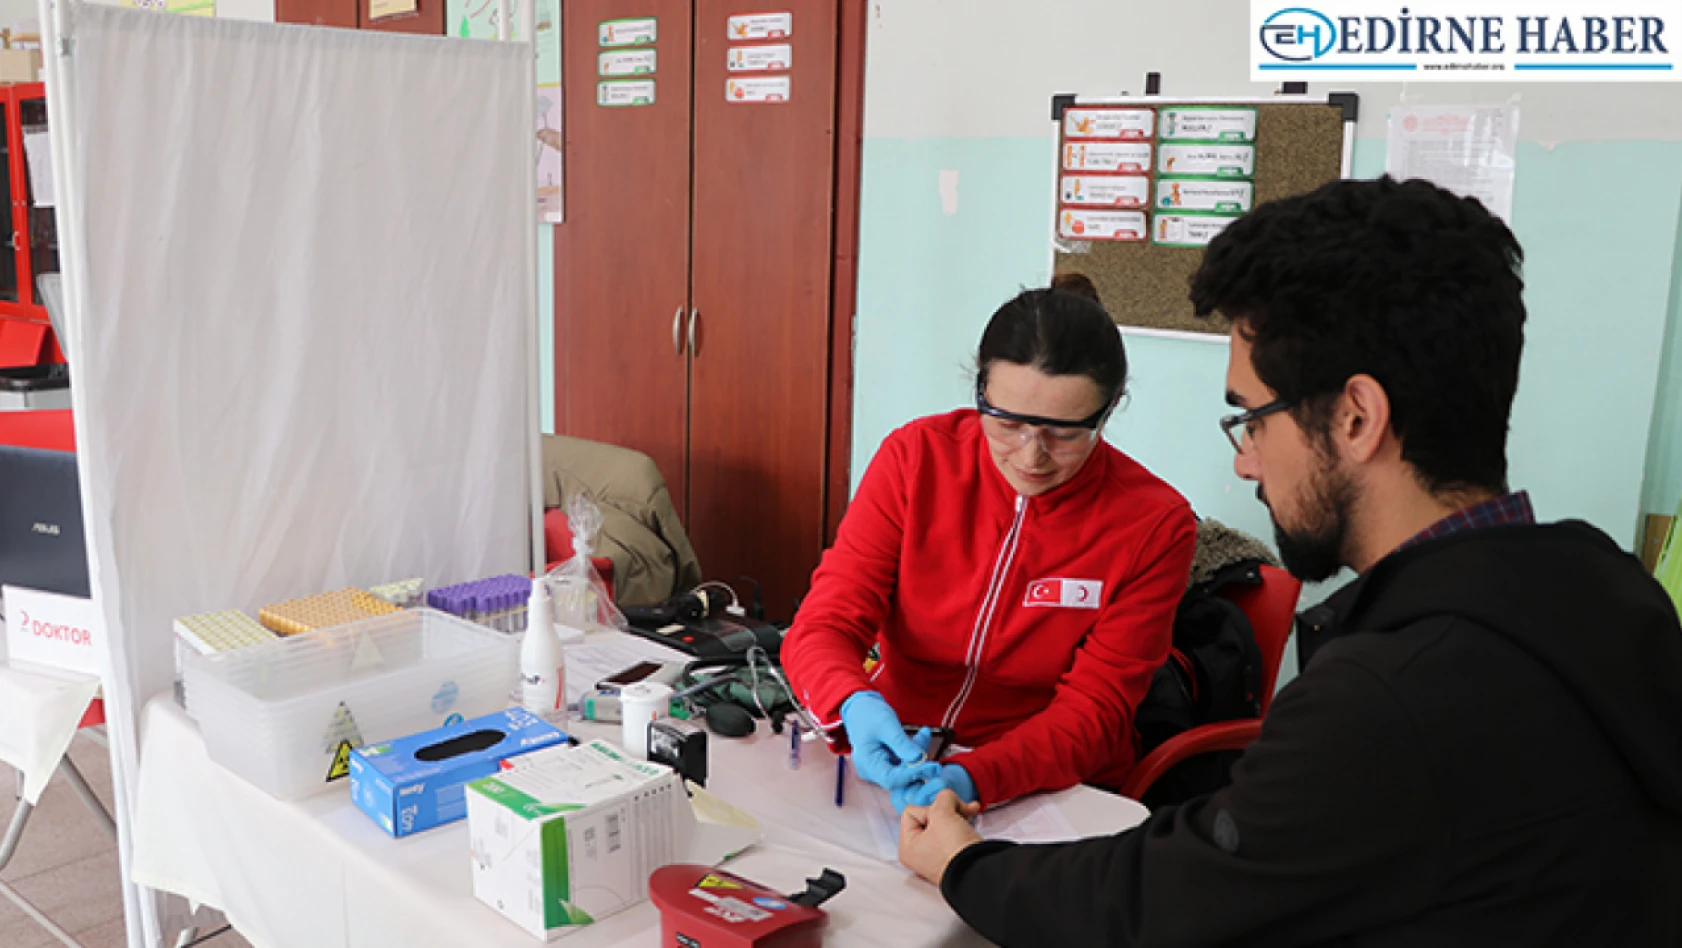 Edirne'de öğrencilerin talebi üzerine okulda kan bağış kampanyası düzenlendi